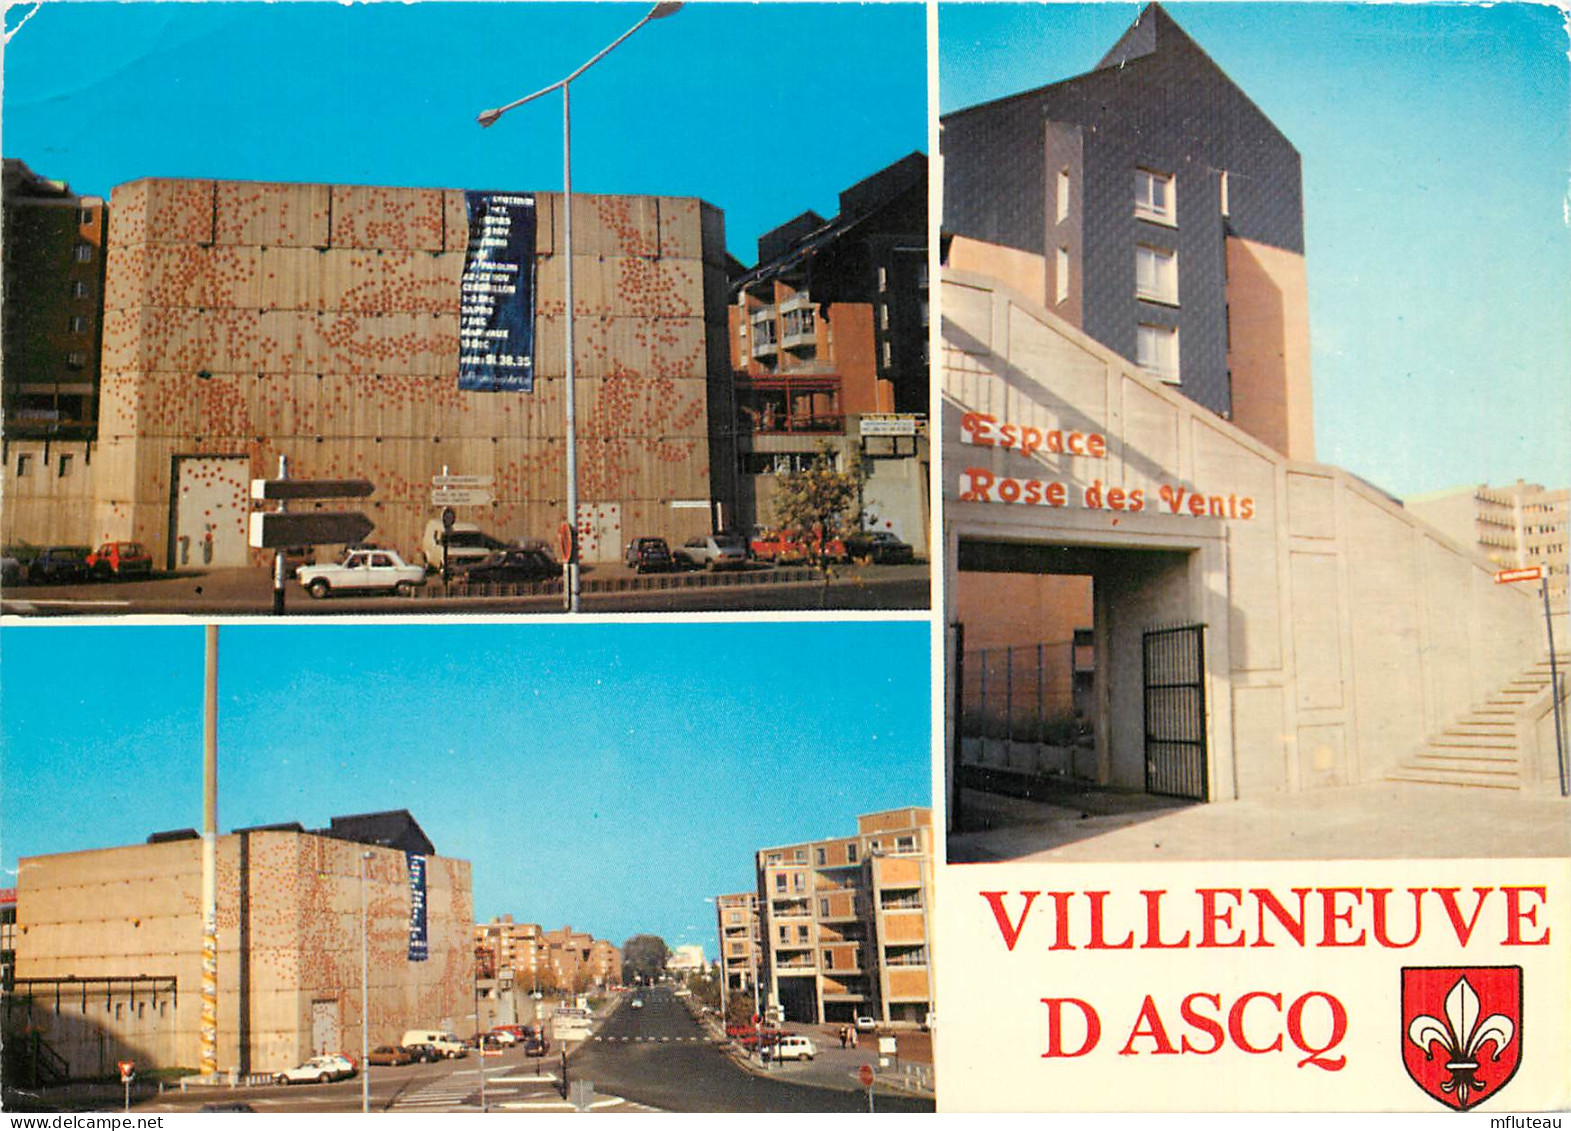 59* VILLENEUVE D ASCQ  Multi Vues   (CPM 10x15cm)     RL18,0302 - Villeneuve D'Ascq